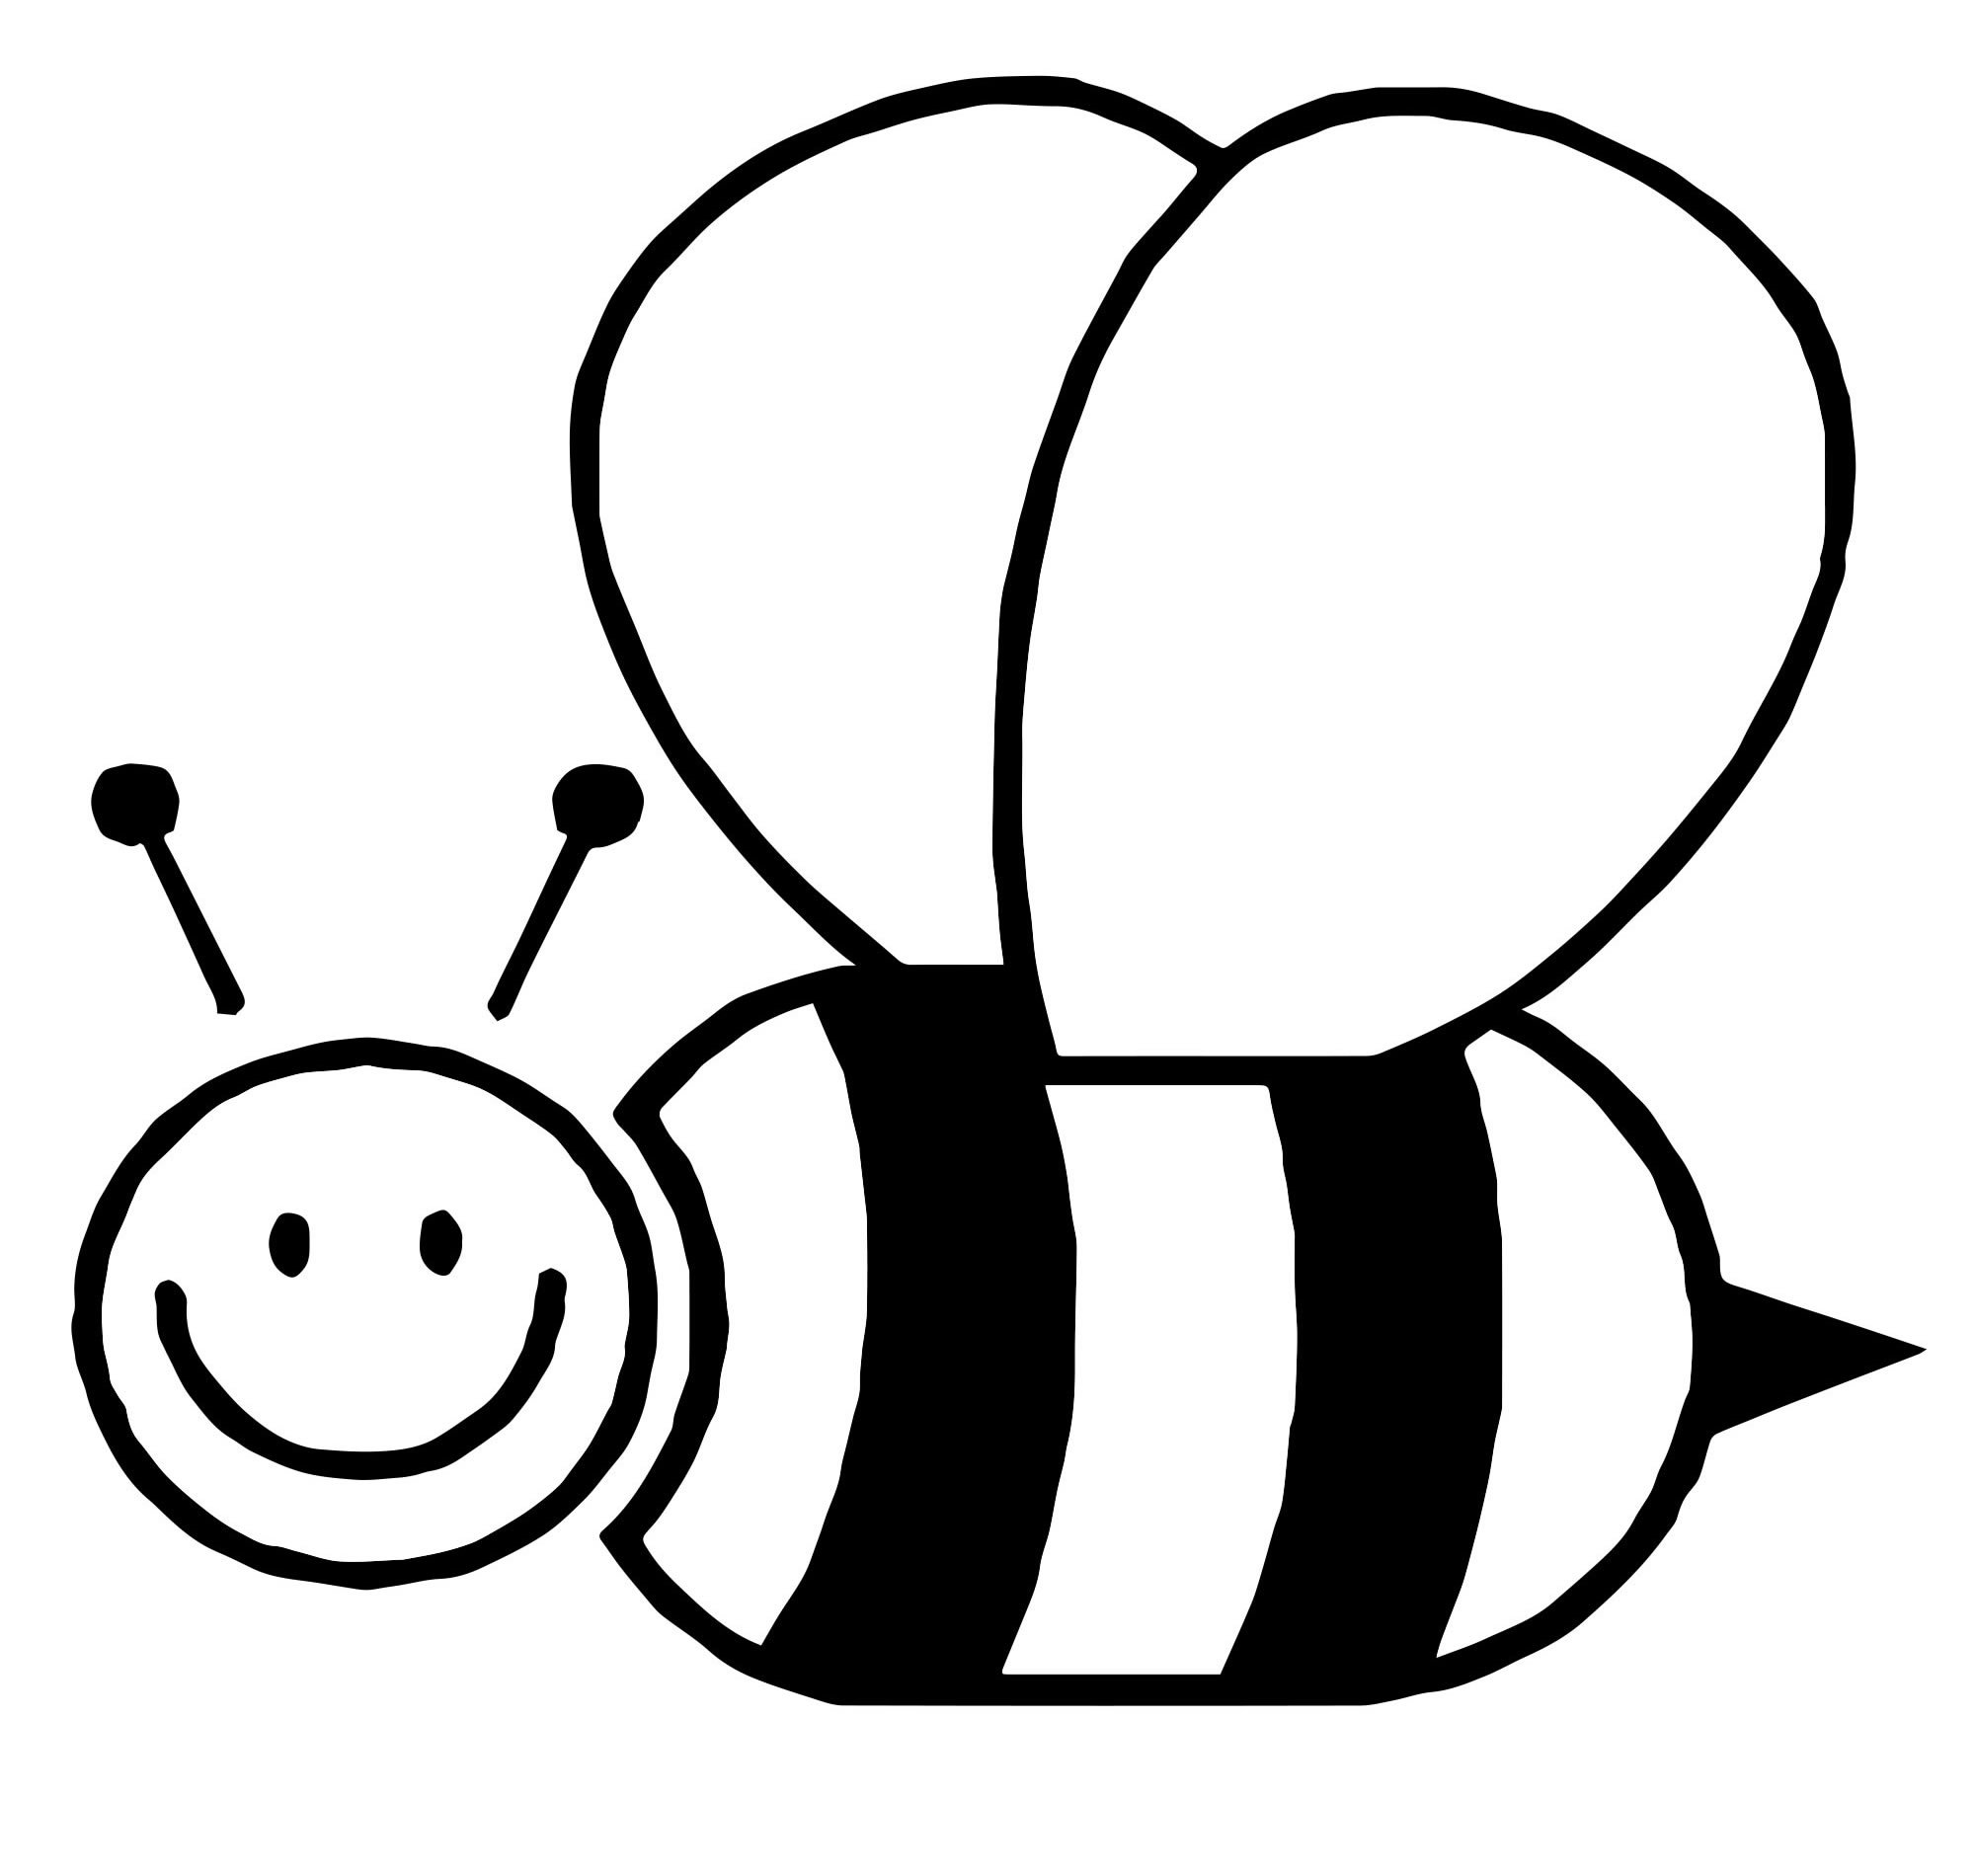 Пчелка раскраска распечатать. Пчелка раскраска для малышей. Раскраска пчёлка для детей. Пчела картинка для детей. Пчела раскраска для детей.